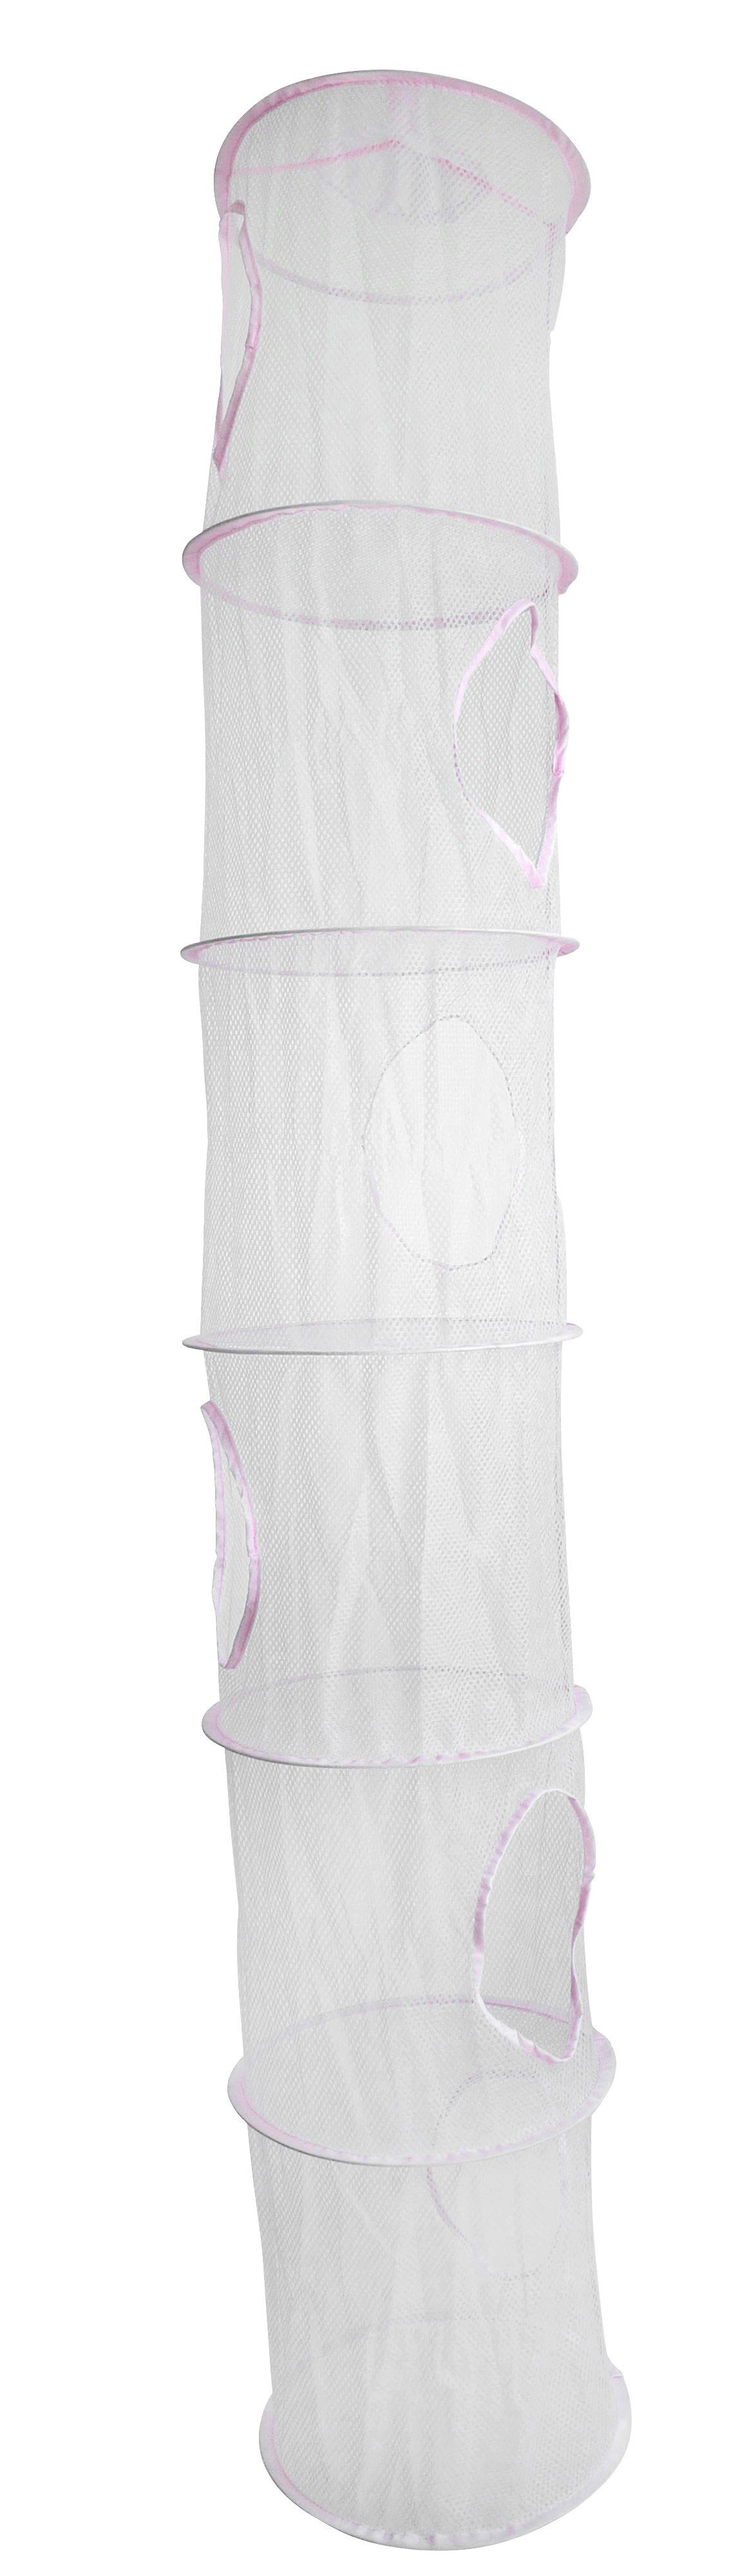 Felakasztható Hálós Tároló Kampy - Rózsaszín, modern, Műanyag (30/180cm) - Modern Living